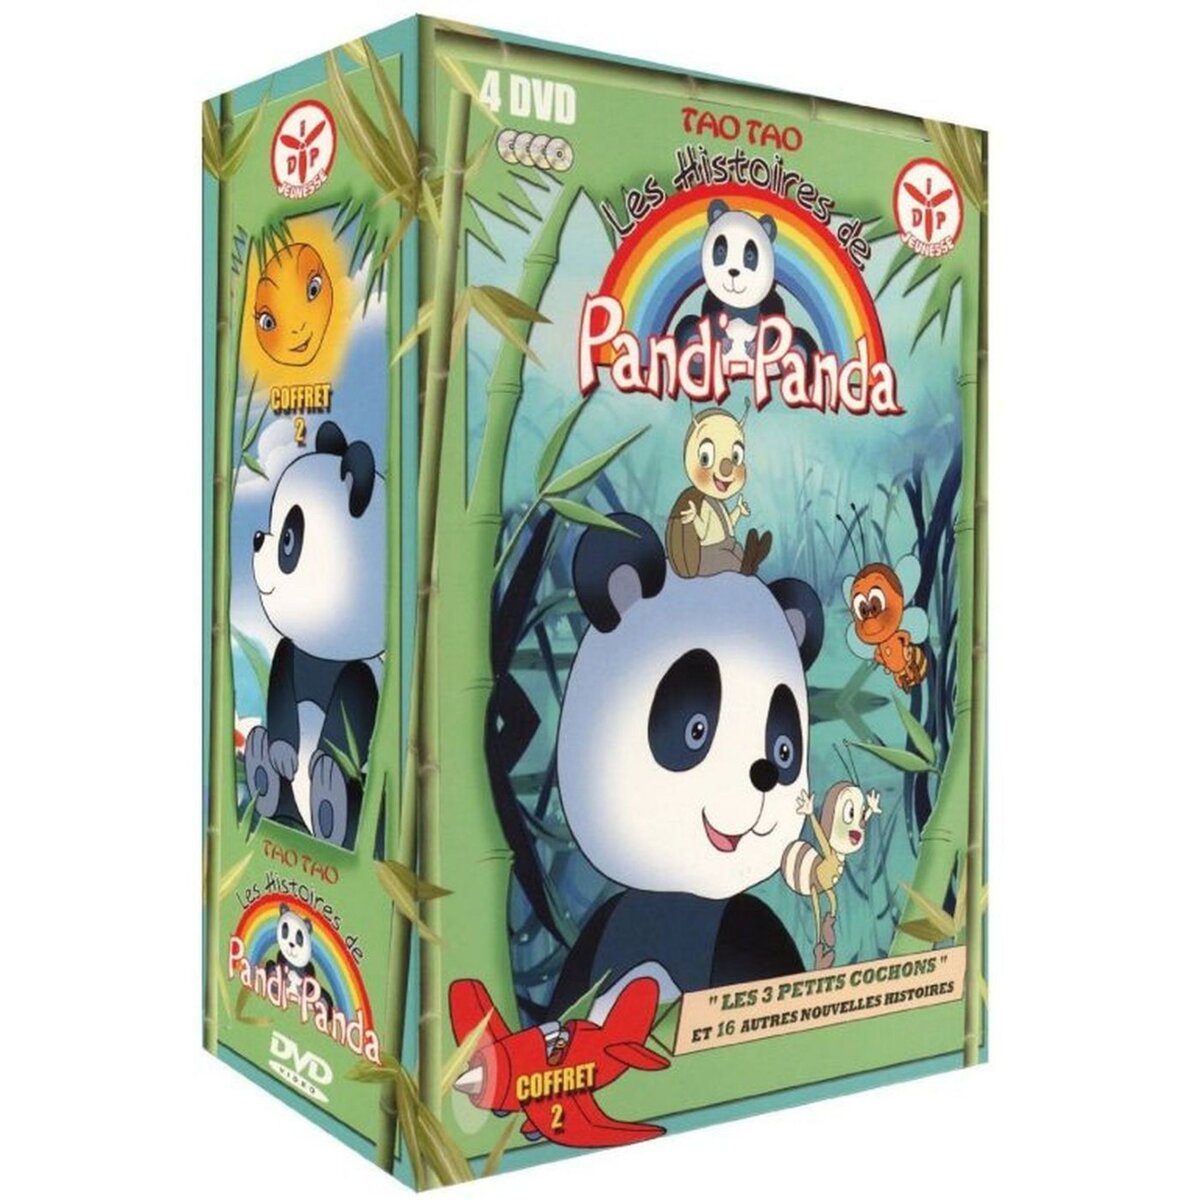 Pandi Panda Vol 2 DVD